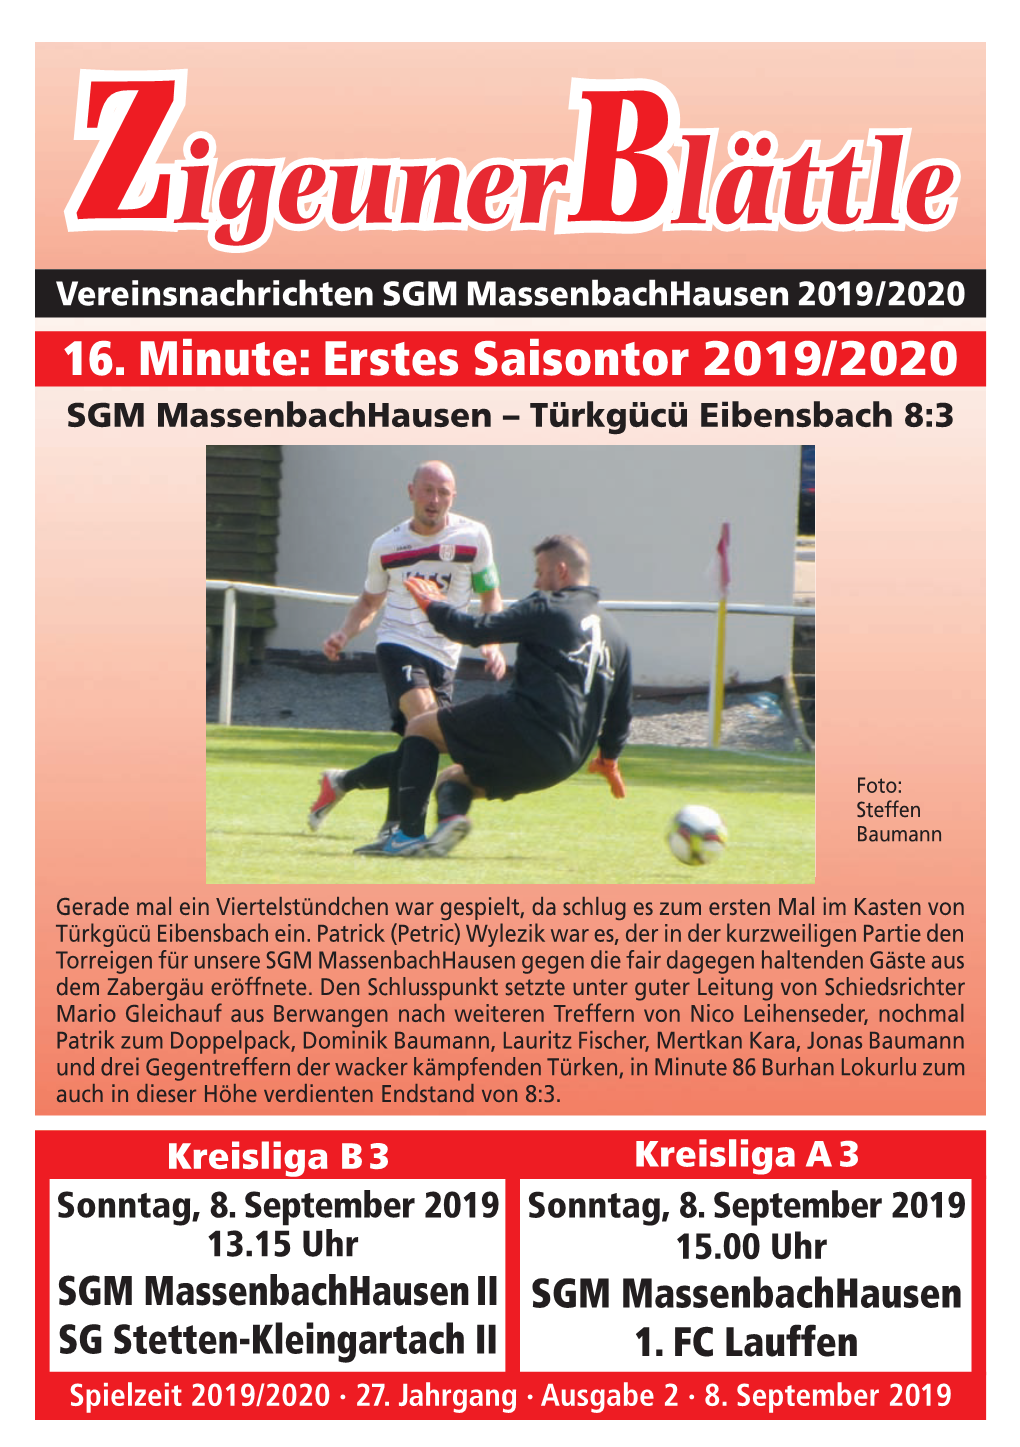 Zigeunerblättle Vereinsnachrichten SGM Massenbachhausen 2019/2020 16